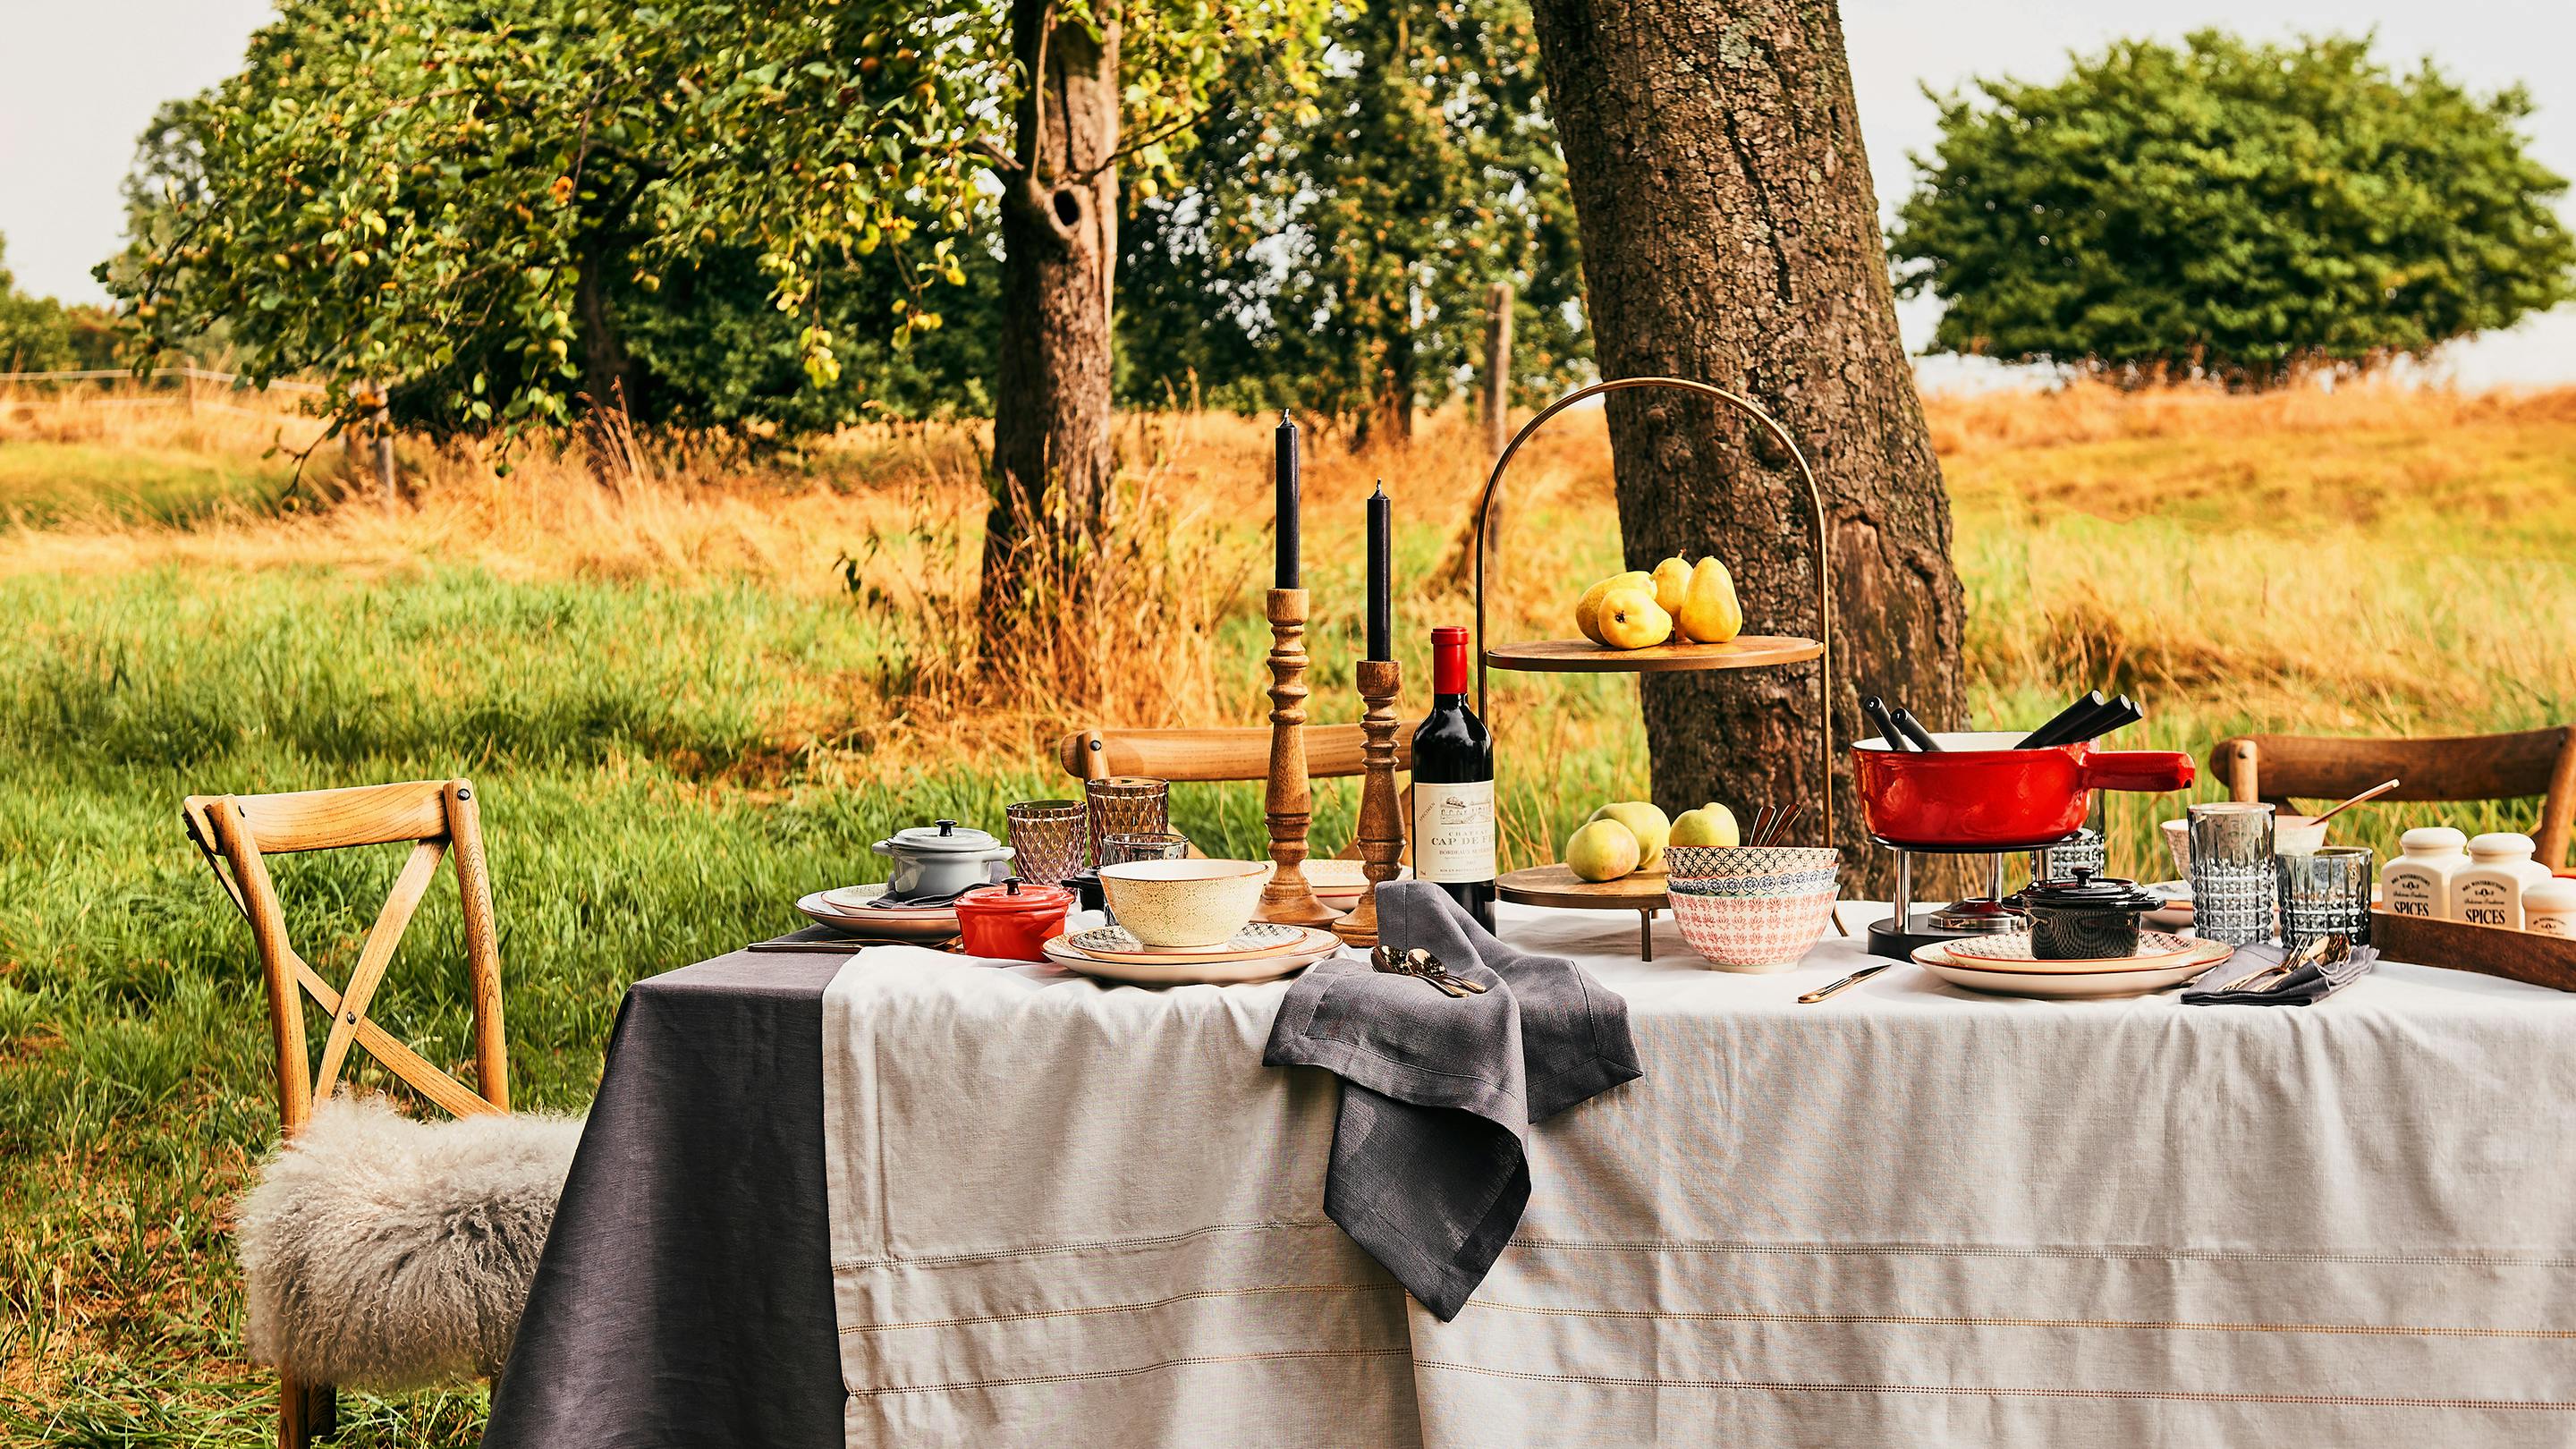 Herbstlich gedeckter Tisch draußen (Marke der Textilien und Deko-Objekte: Butlers).